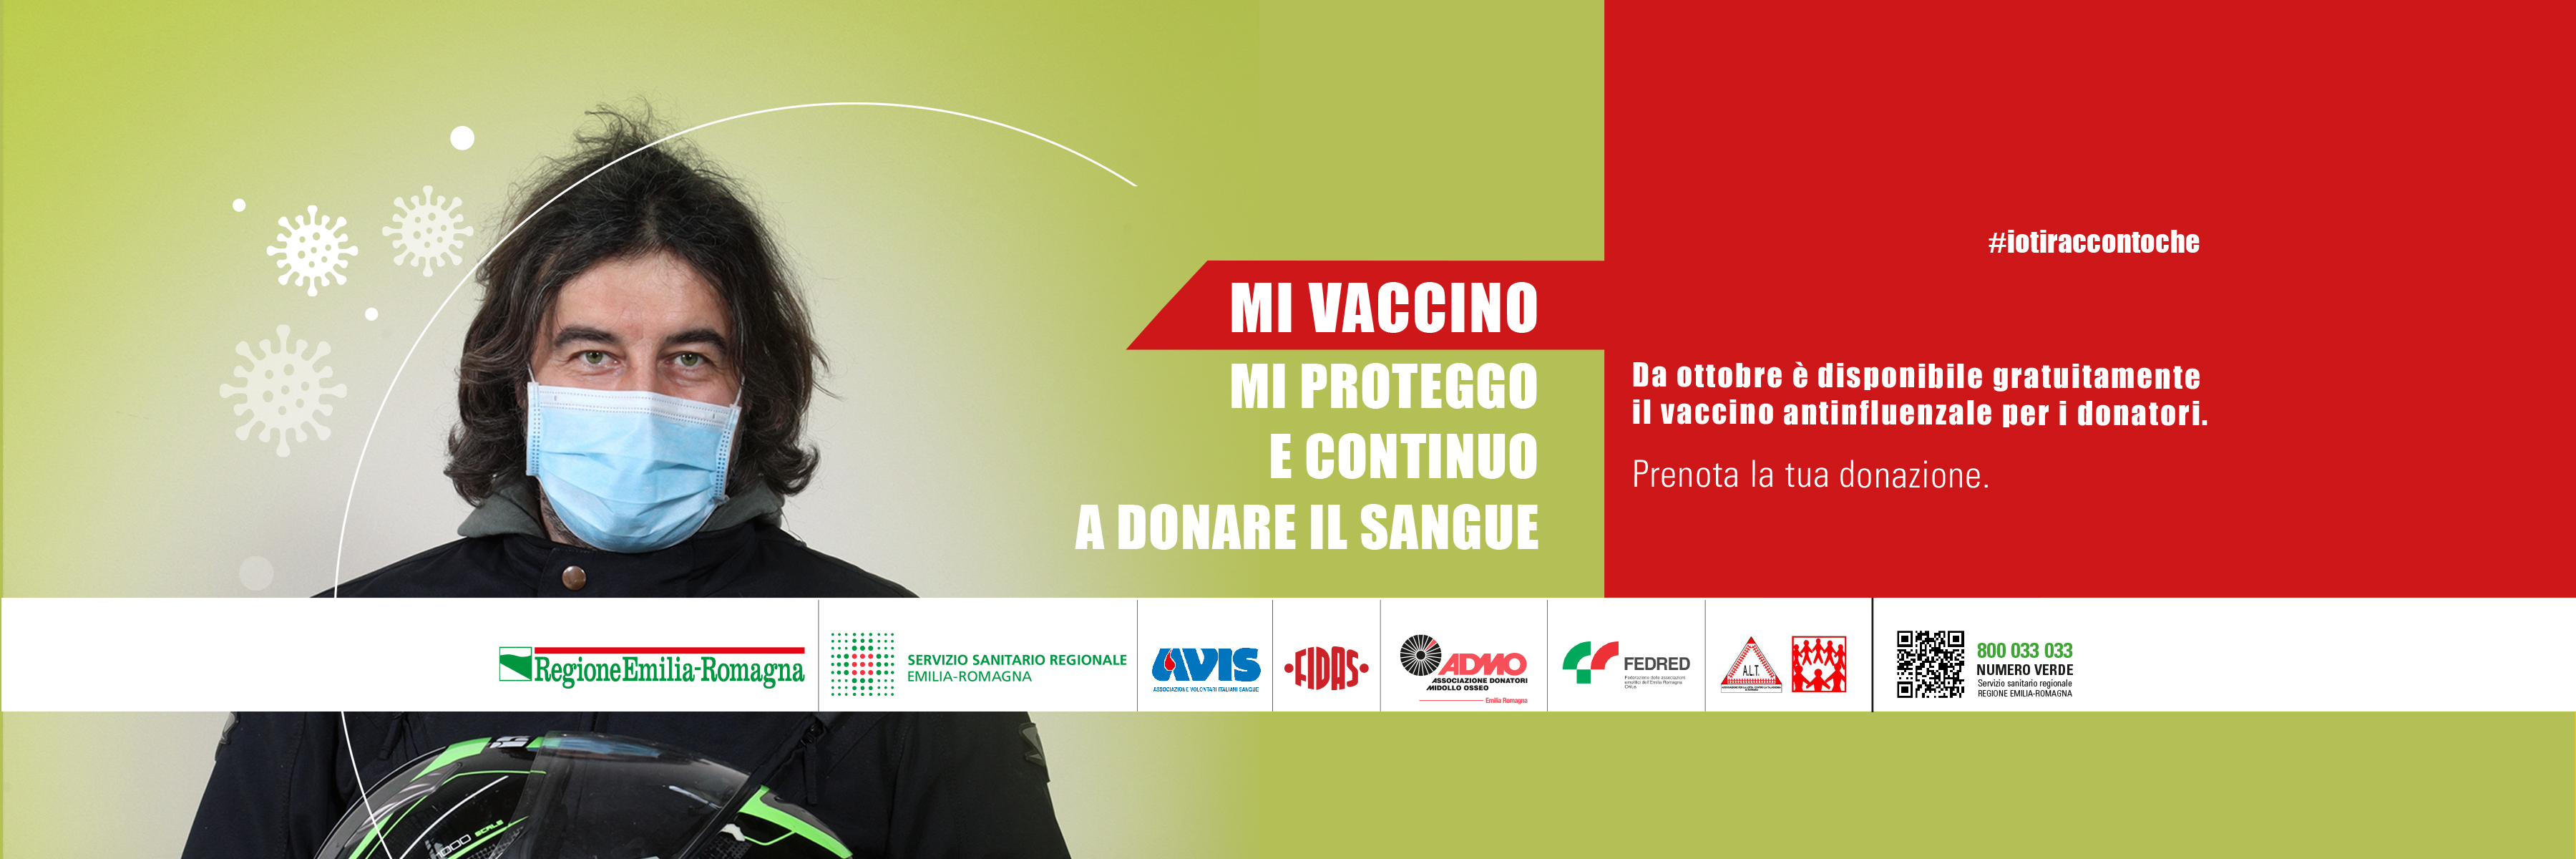 banner rer campagna donazione_vaccinazione 2020.jpg